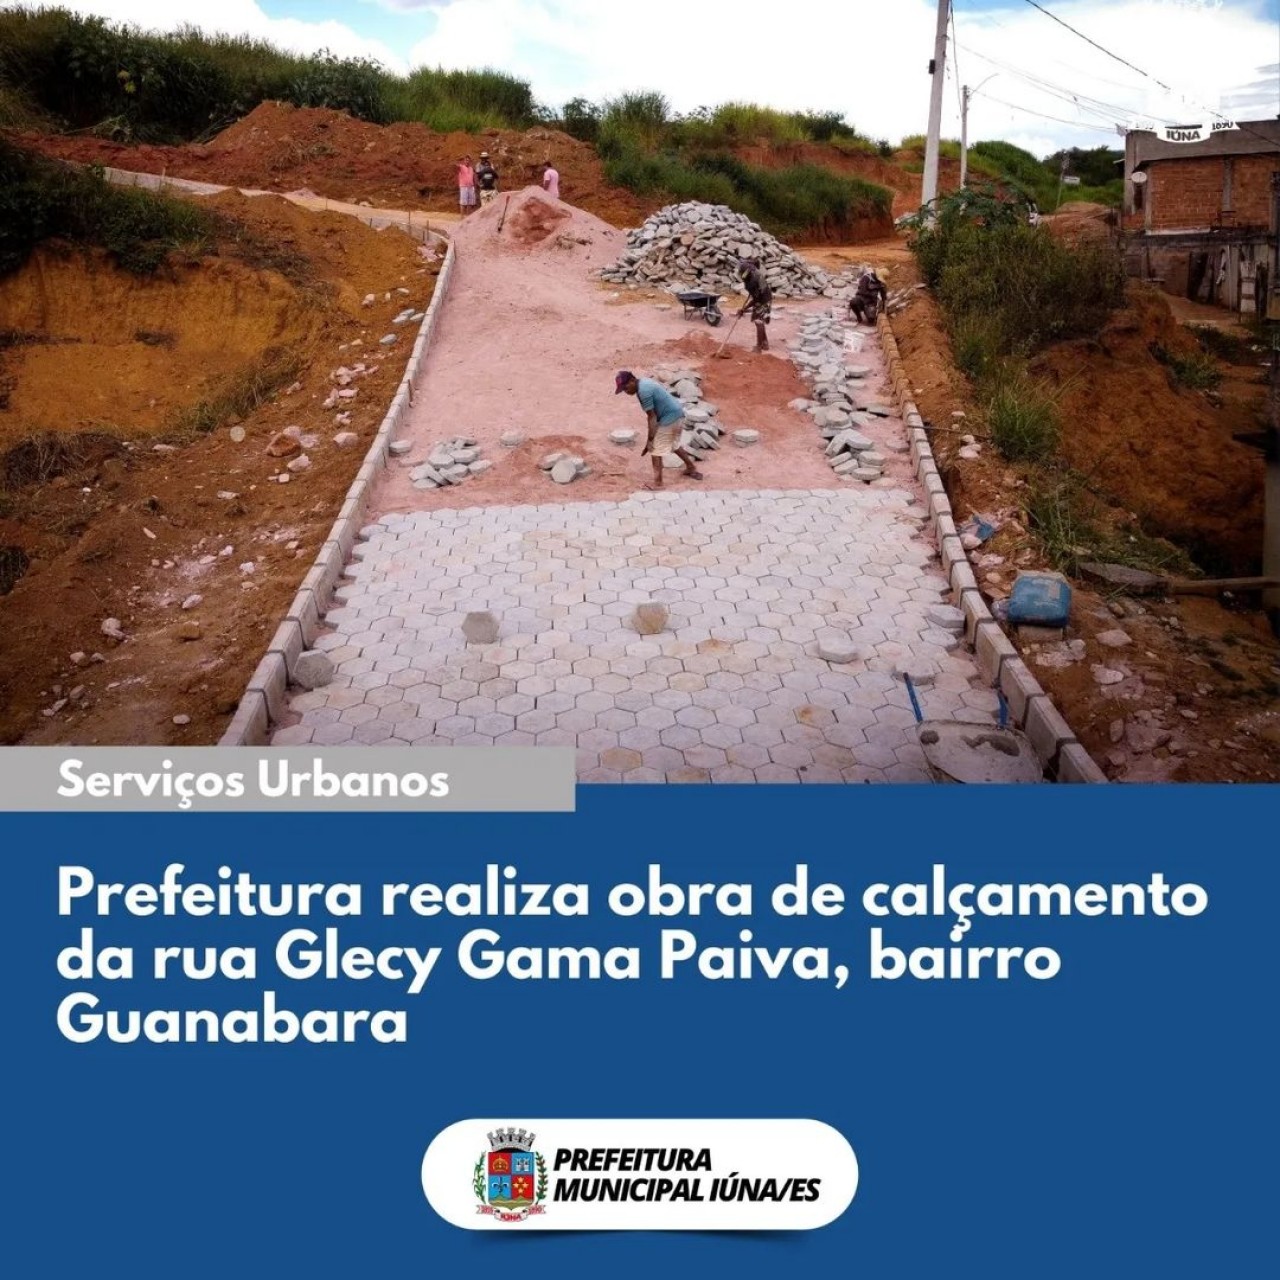 OBRAS 96 - drenagem, rede de esgoto e revitalização da rua Glecy Gama Paiva, no bairro Guanabara.